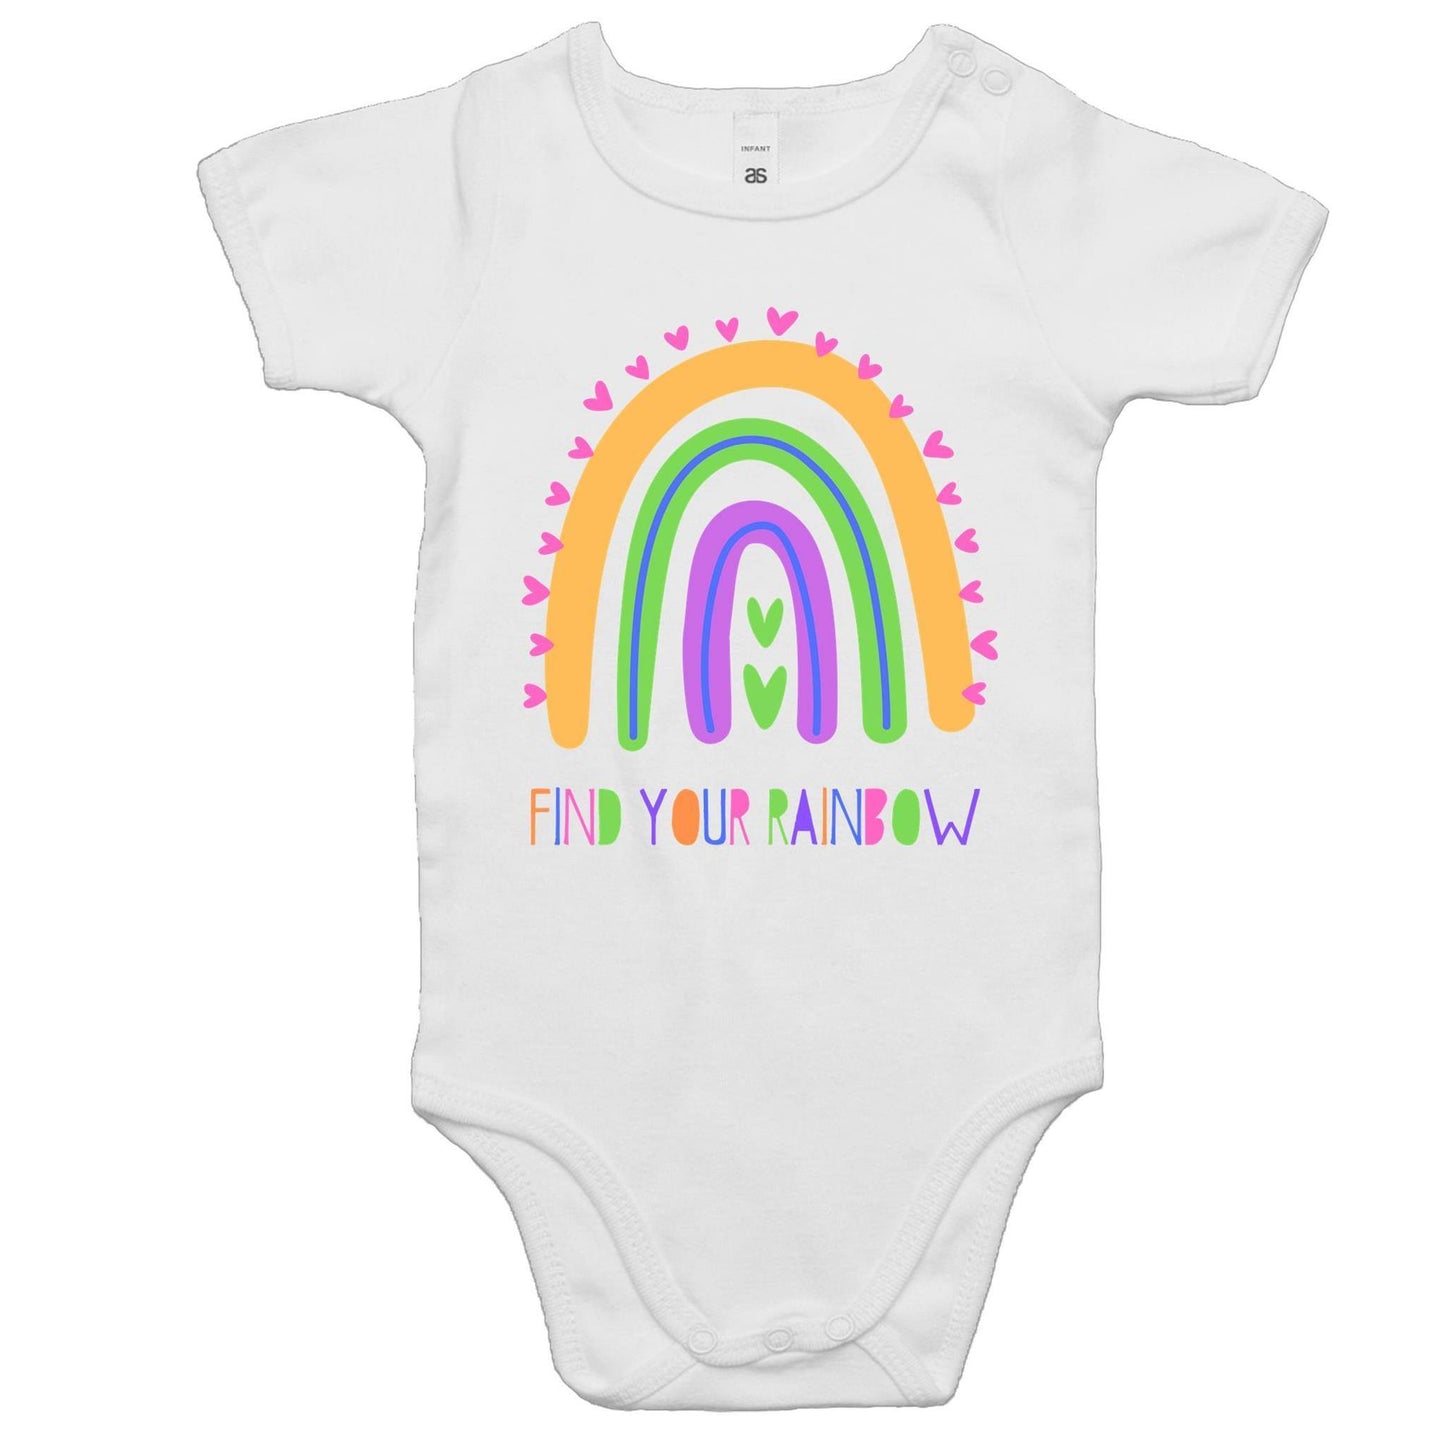 Find Your Rainbow - Baby Bodysuit White Baby Bodysuit kids